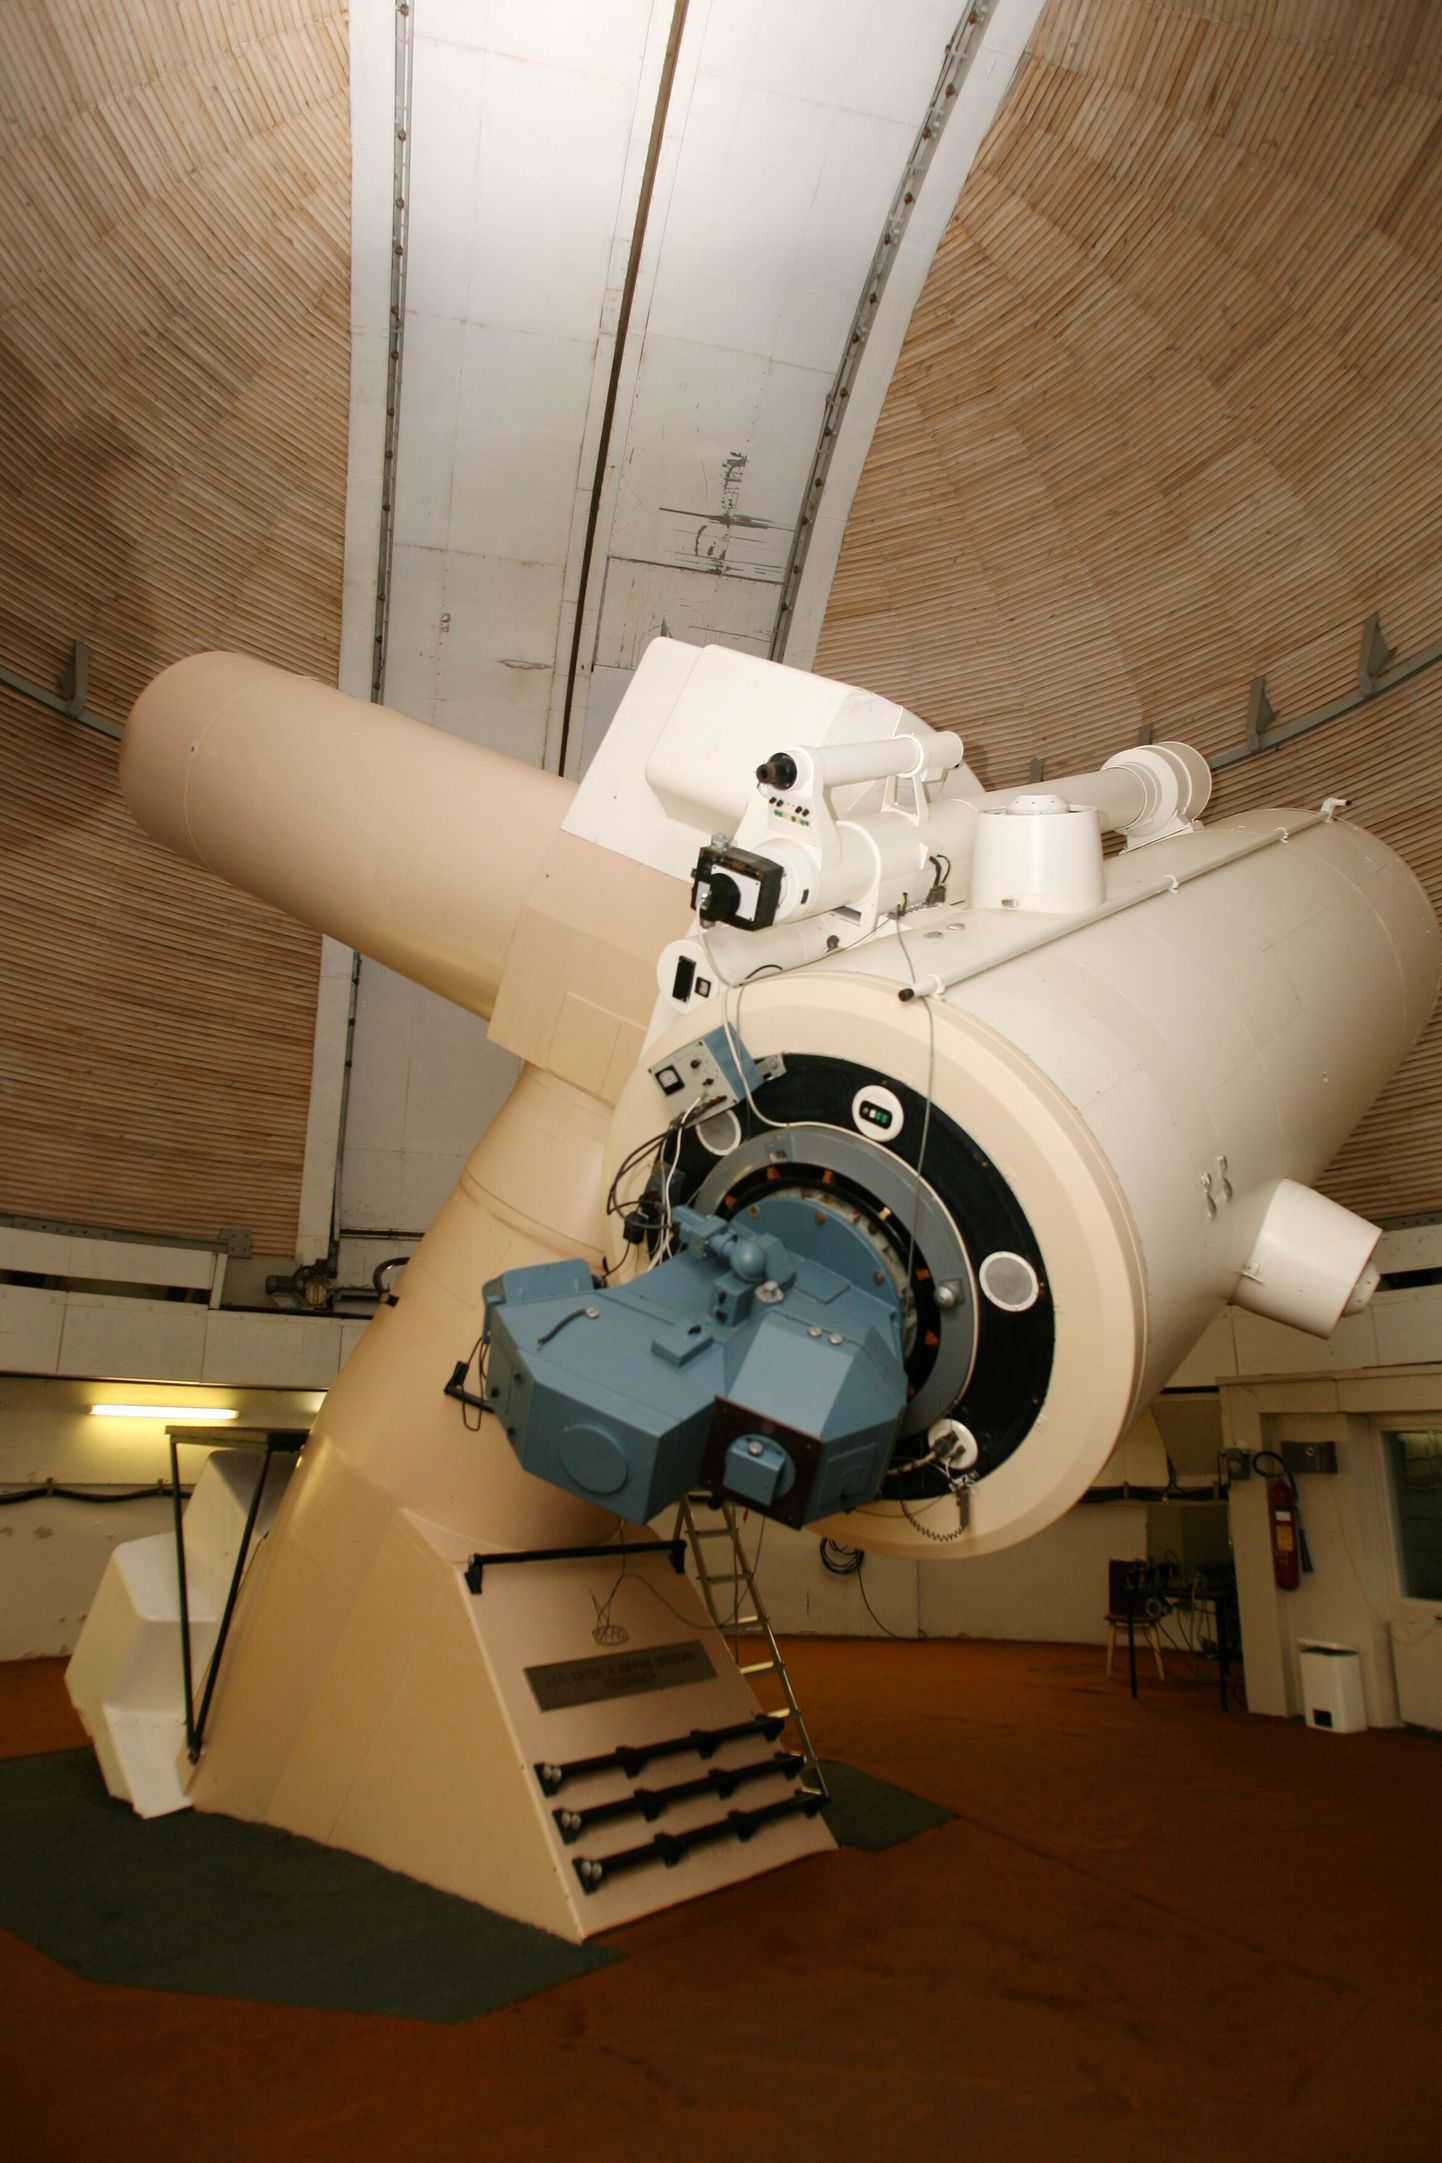 Tõravere observatooriumi teleskoop.